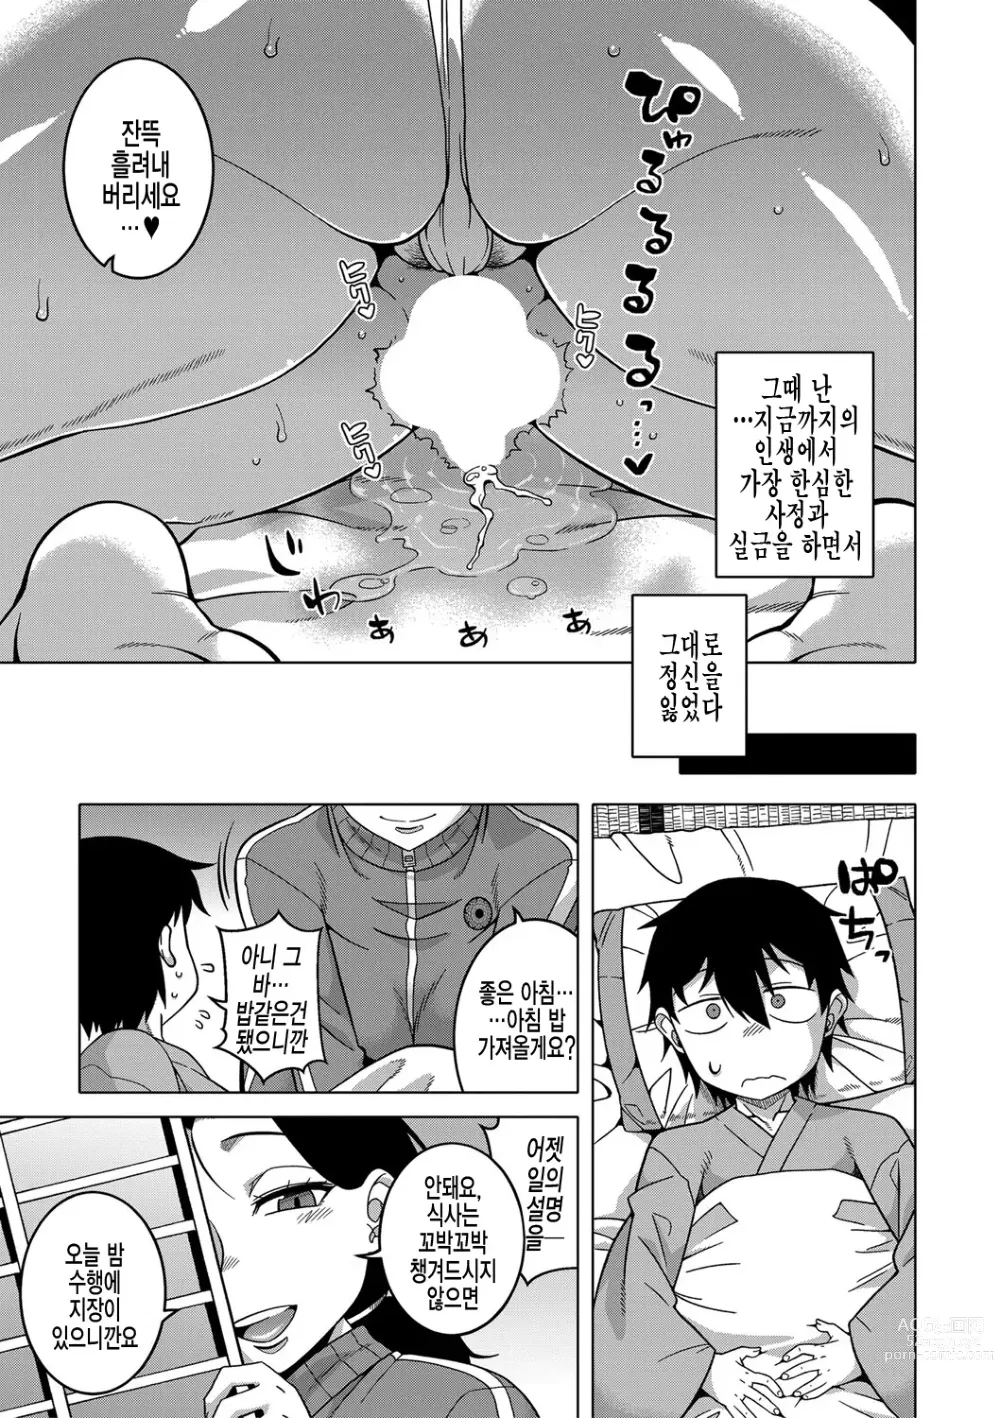 Page 23 of manga  교주님을 만드는 법